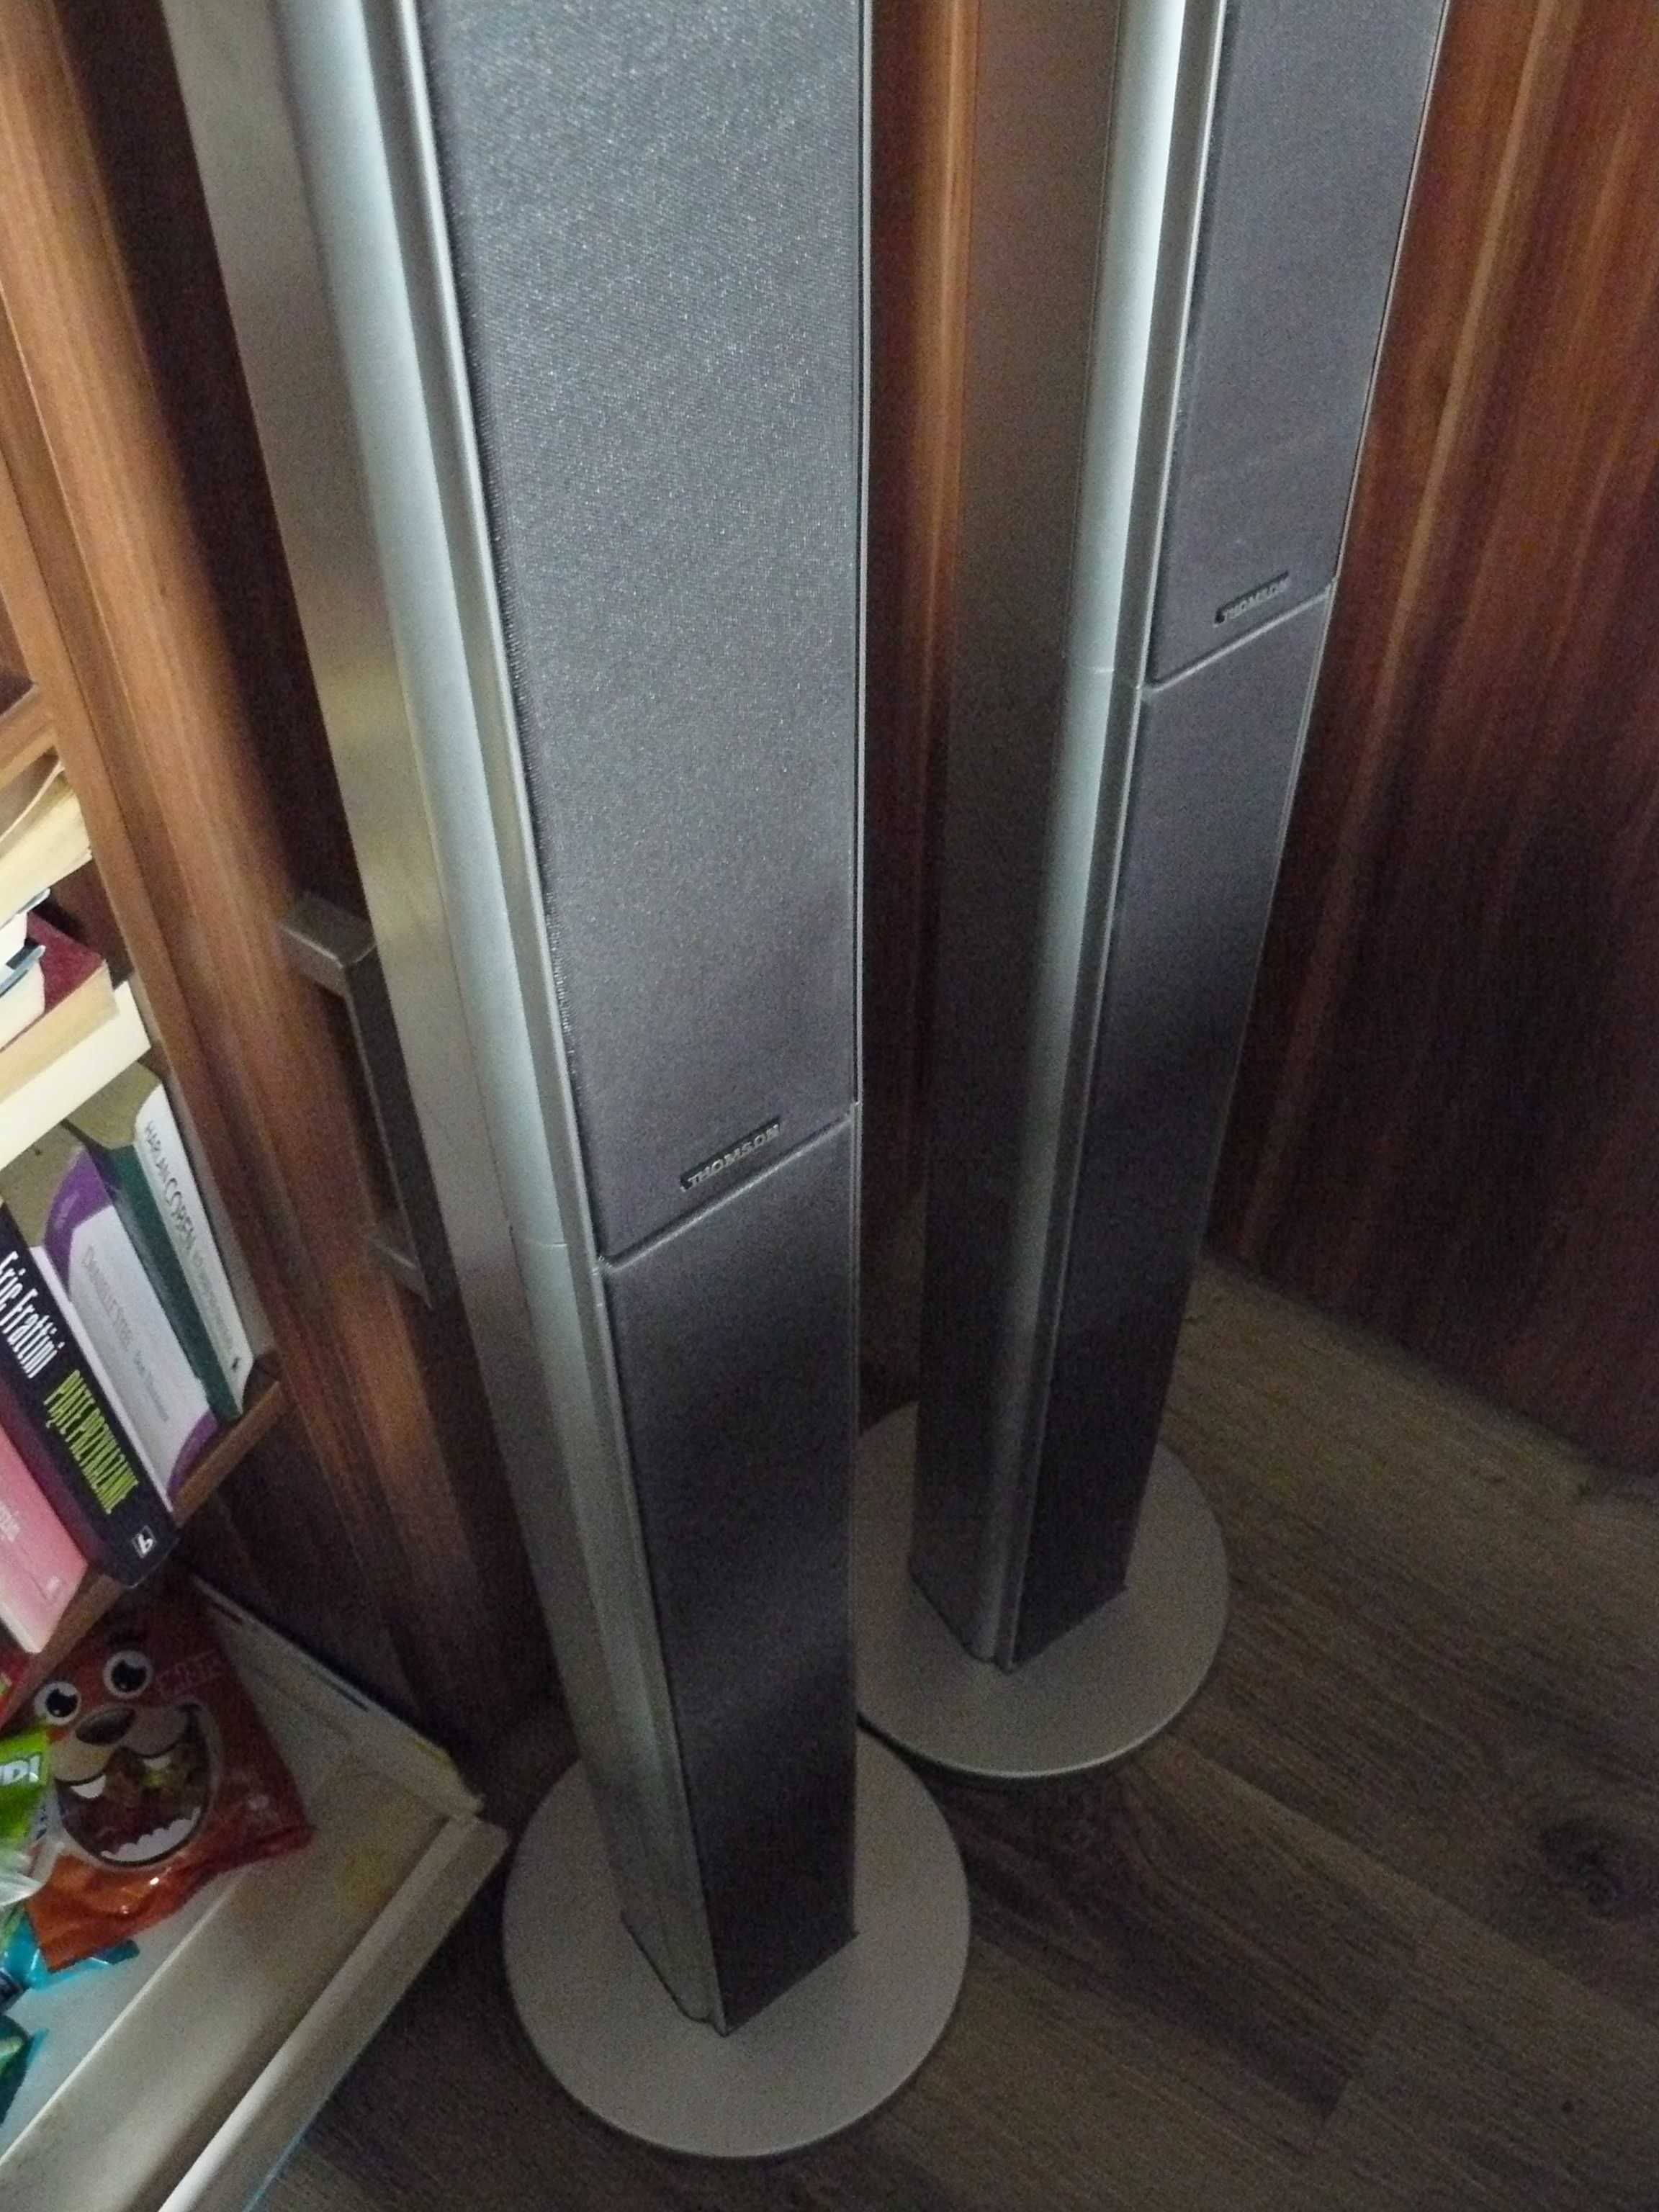 Kolumny głośnikowe Thomson wysokie 116 cm od kina domowego